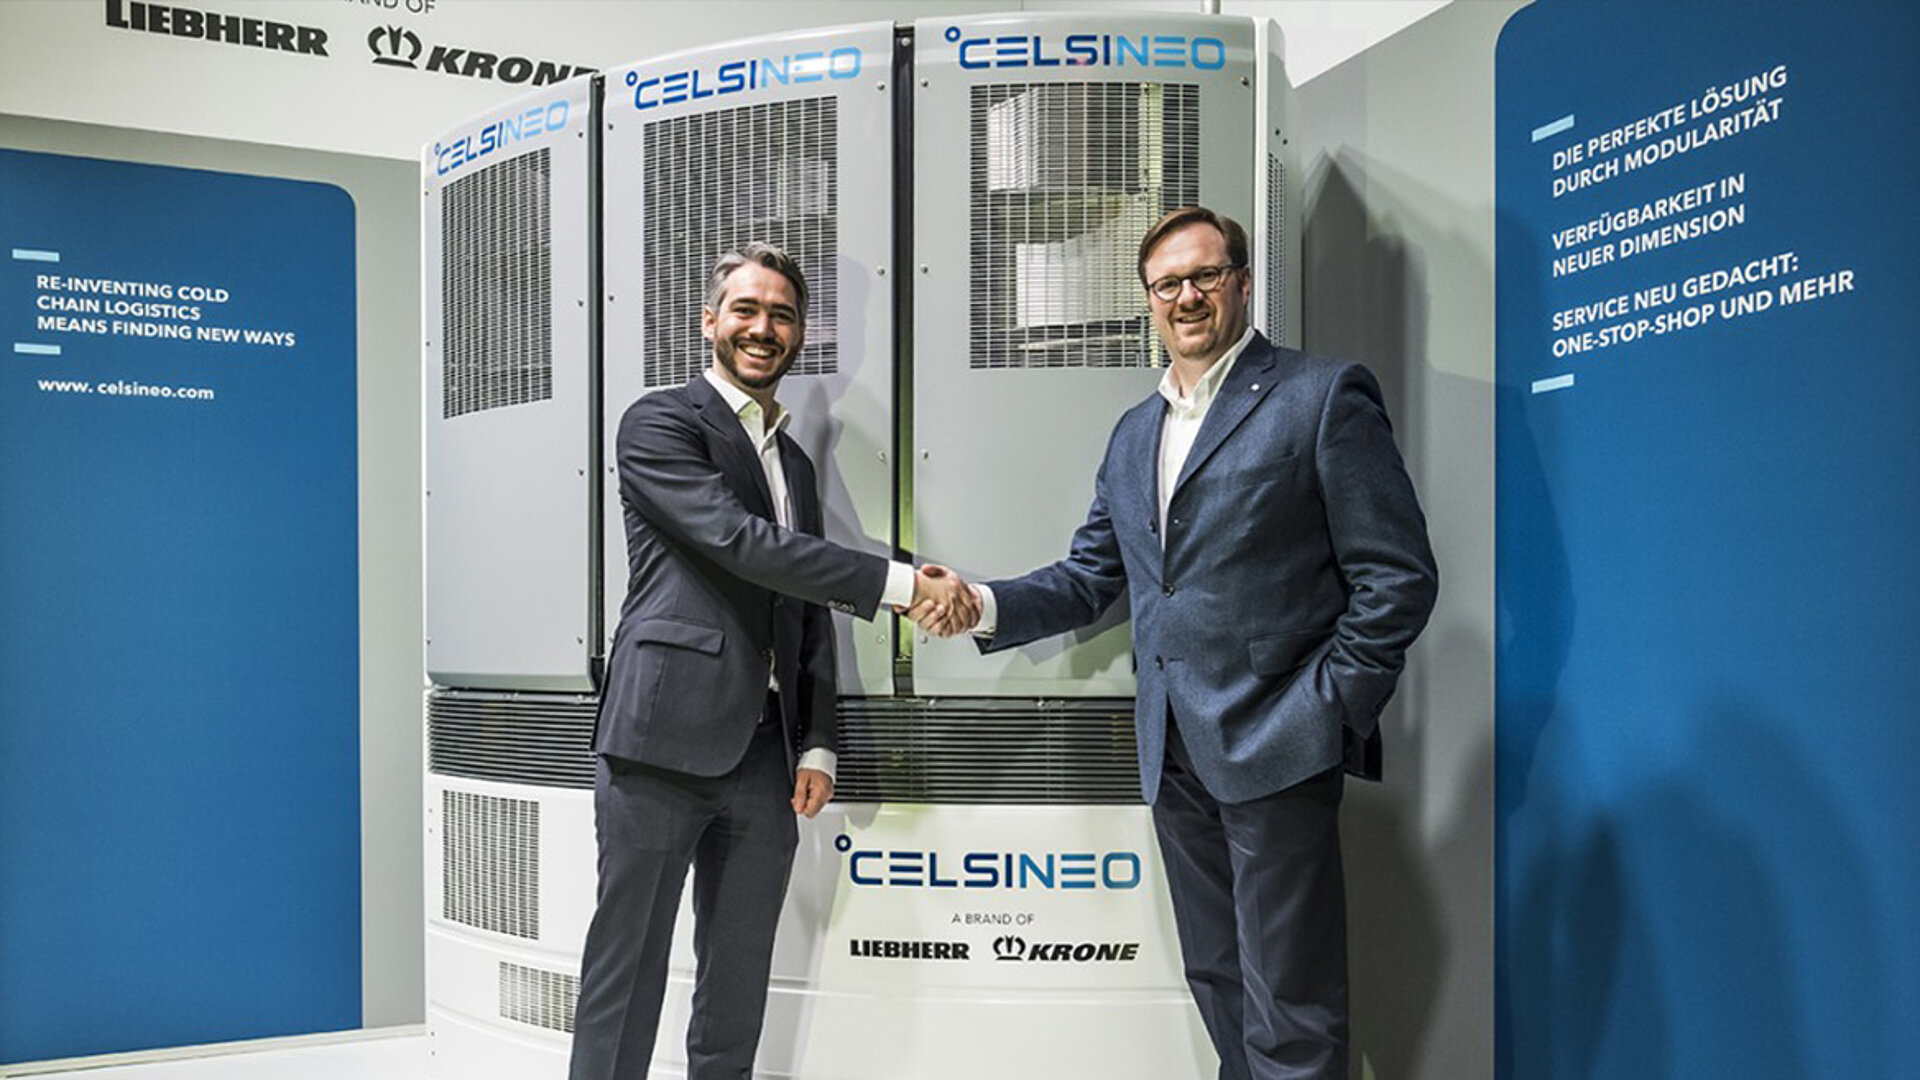 Handshake von Bernhard Krone und Philipp Liebherr vor dem Celsineo-Aggregat